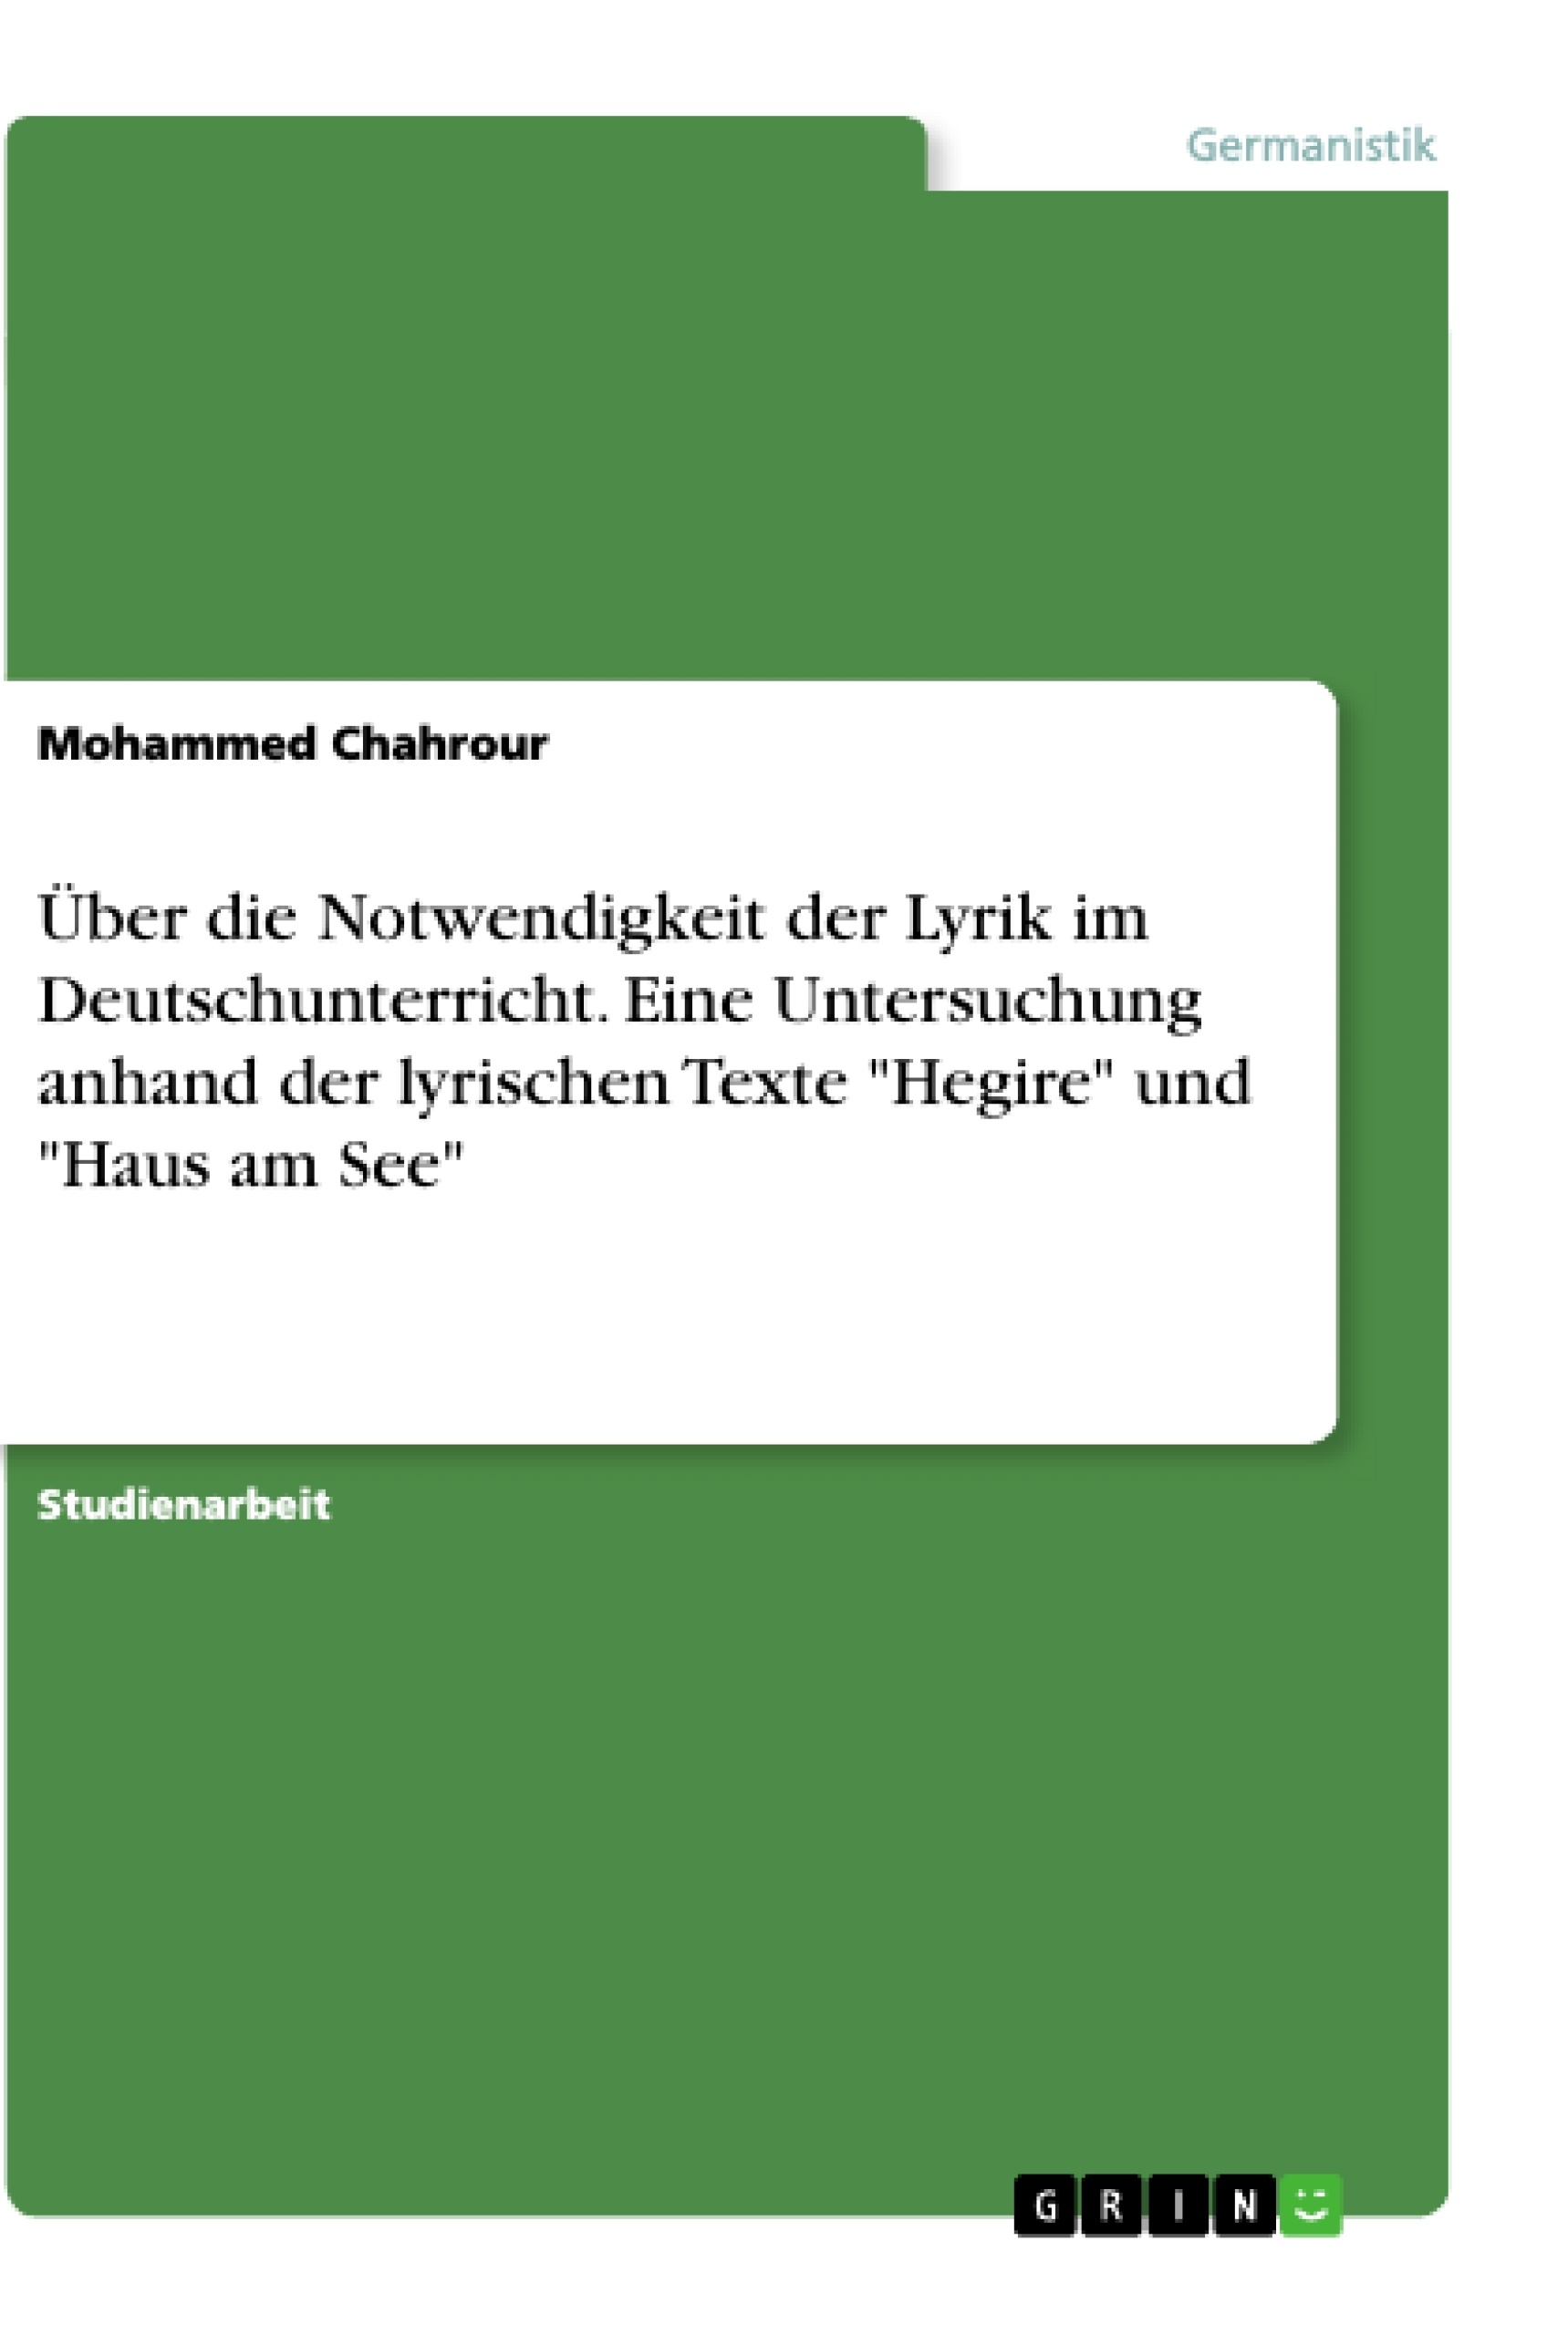 Titel: Über die Notwendigkeit der Lyrik im Deutschunterricht. Eine Untersuchung anhand der lyrischen Texte "Hegire" und "Haus am See"